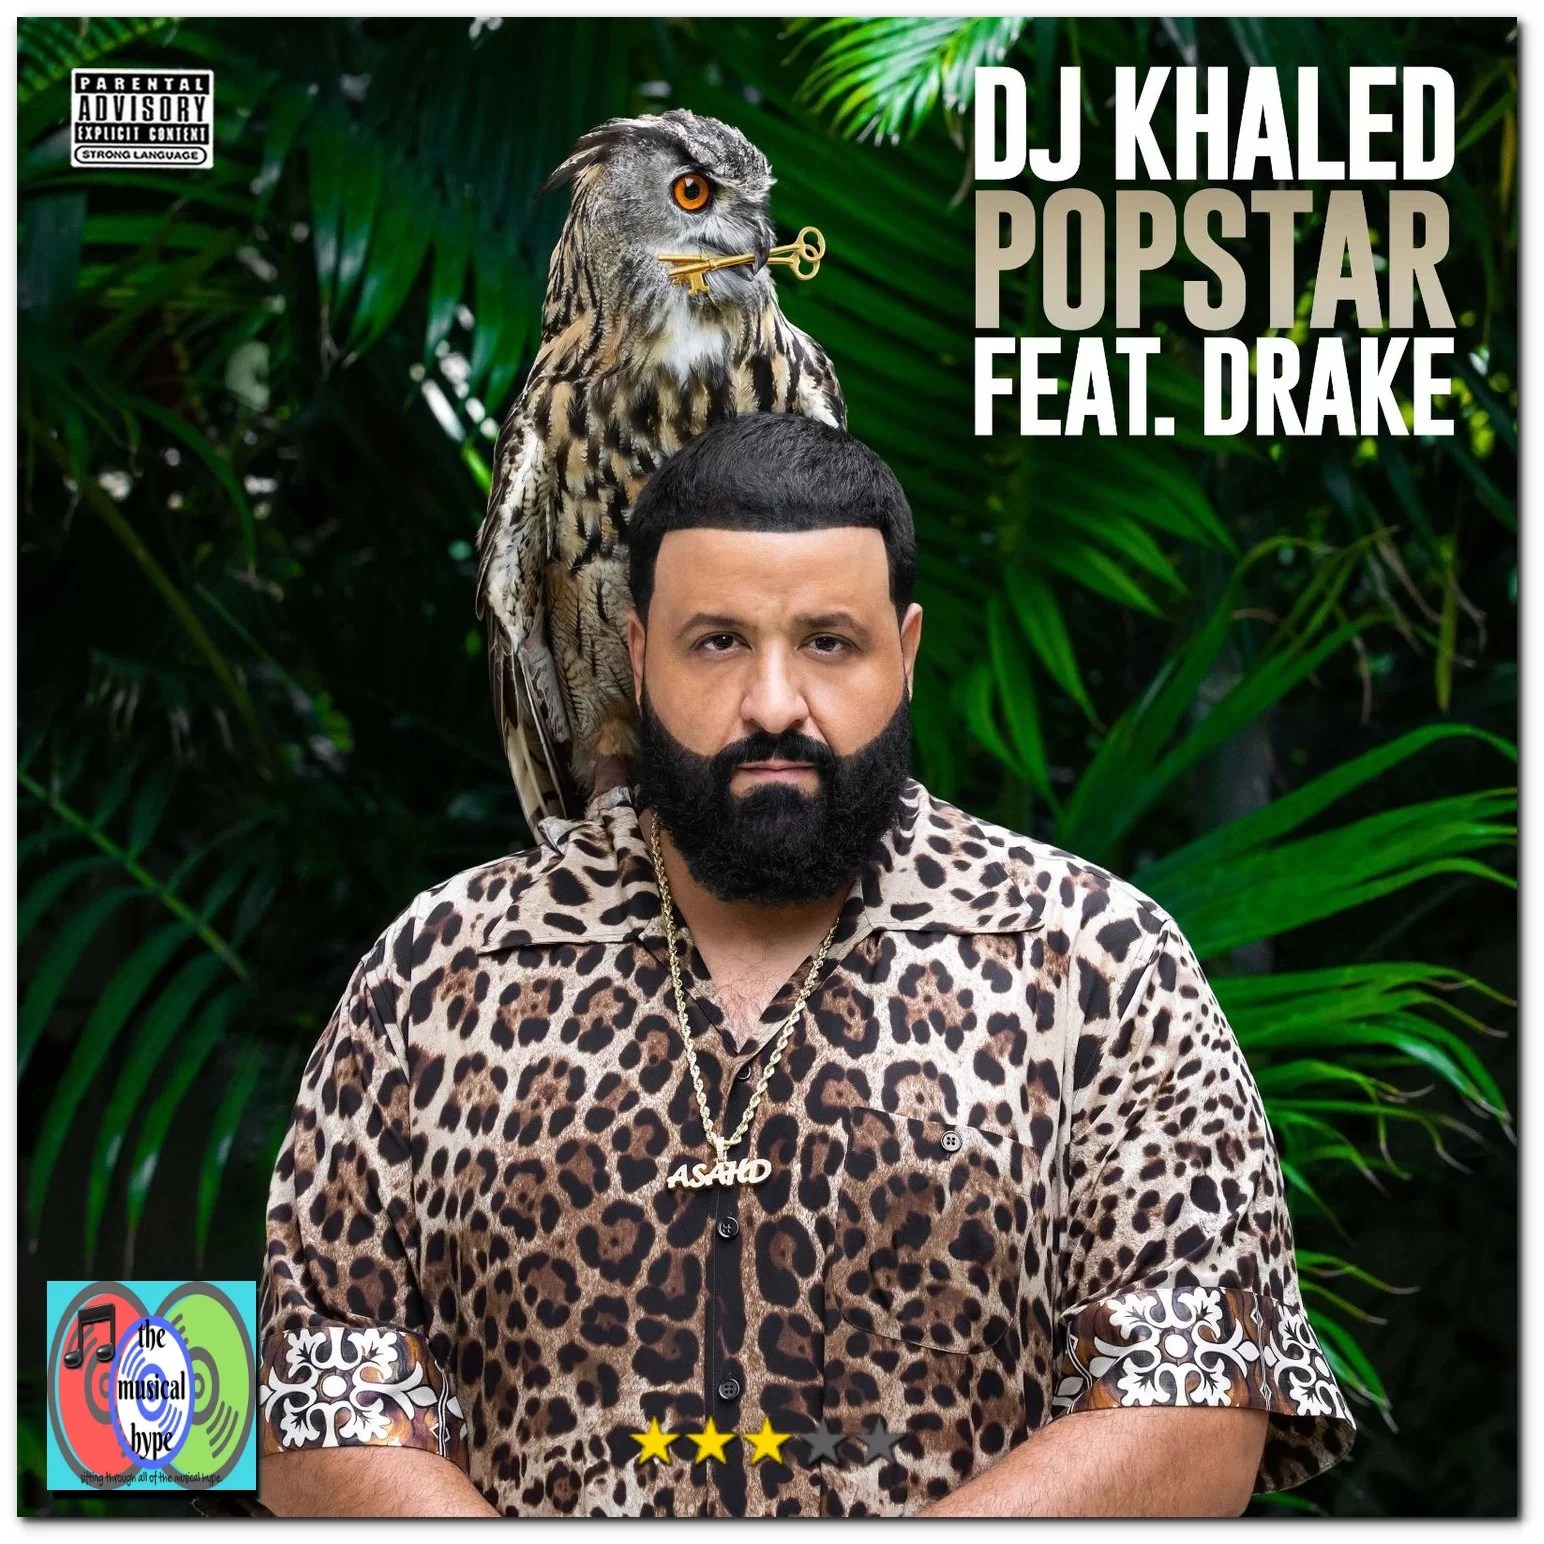 dj-khaled-popstar-epic-1.jpeg